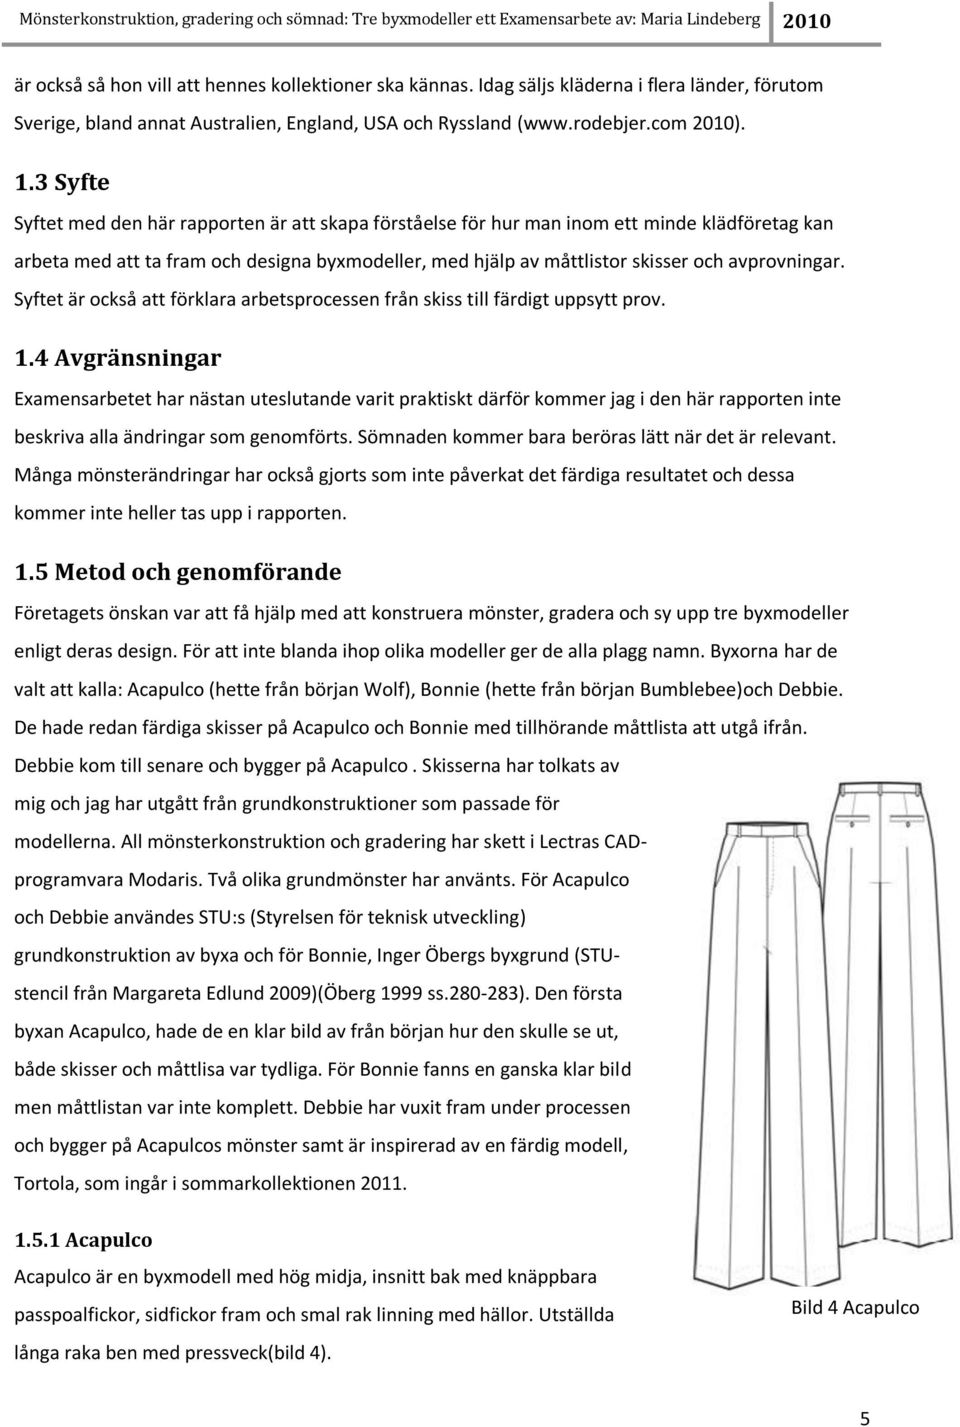 Mönsterkonstruktion, gradering och sömnad: Tre byxmodeller - PDF ...